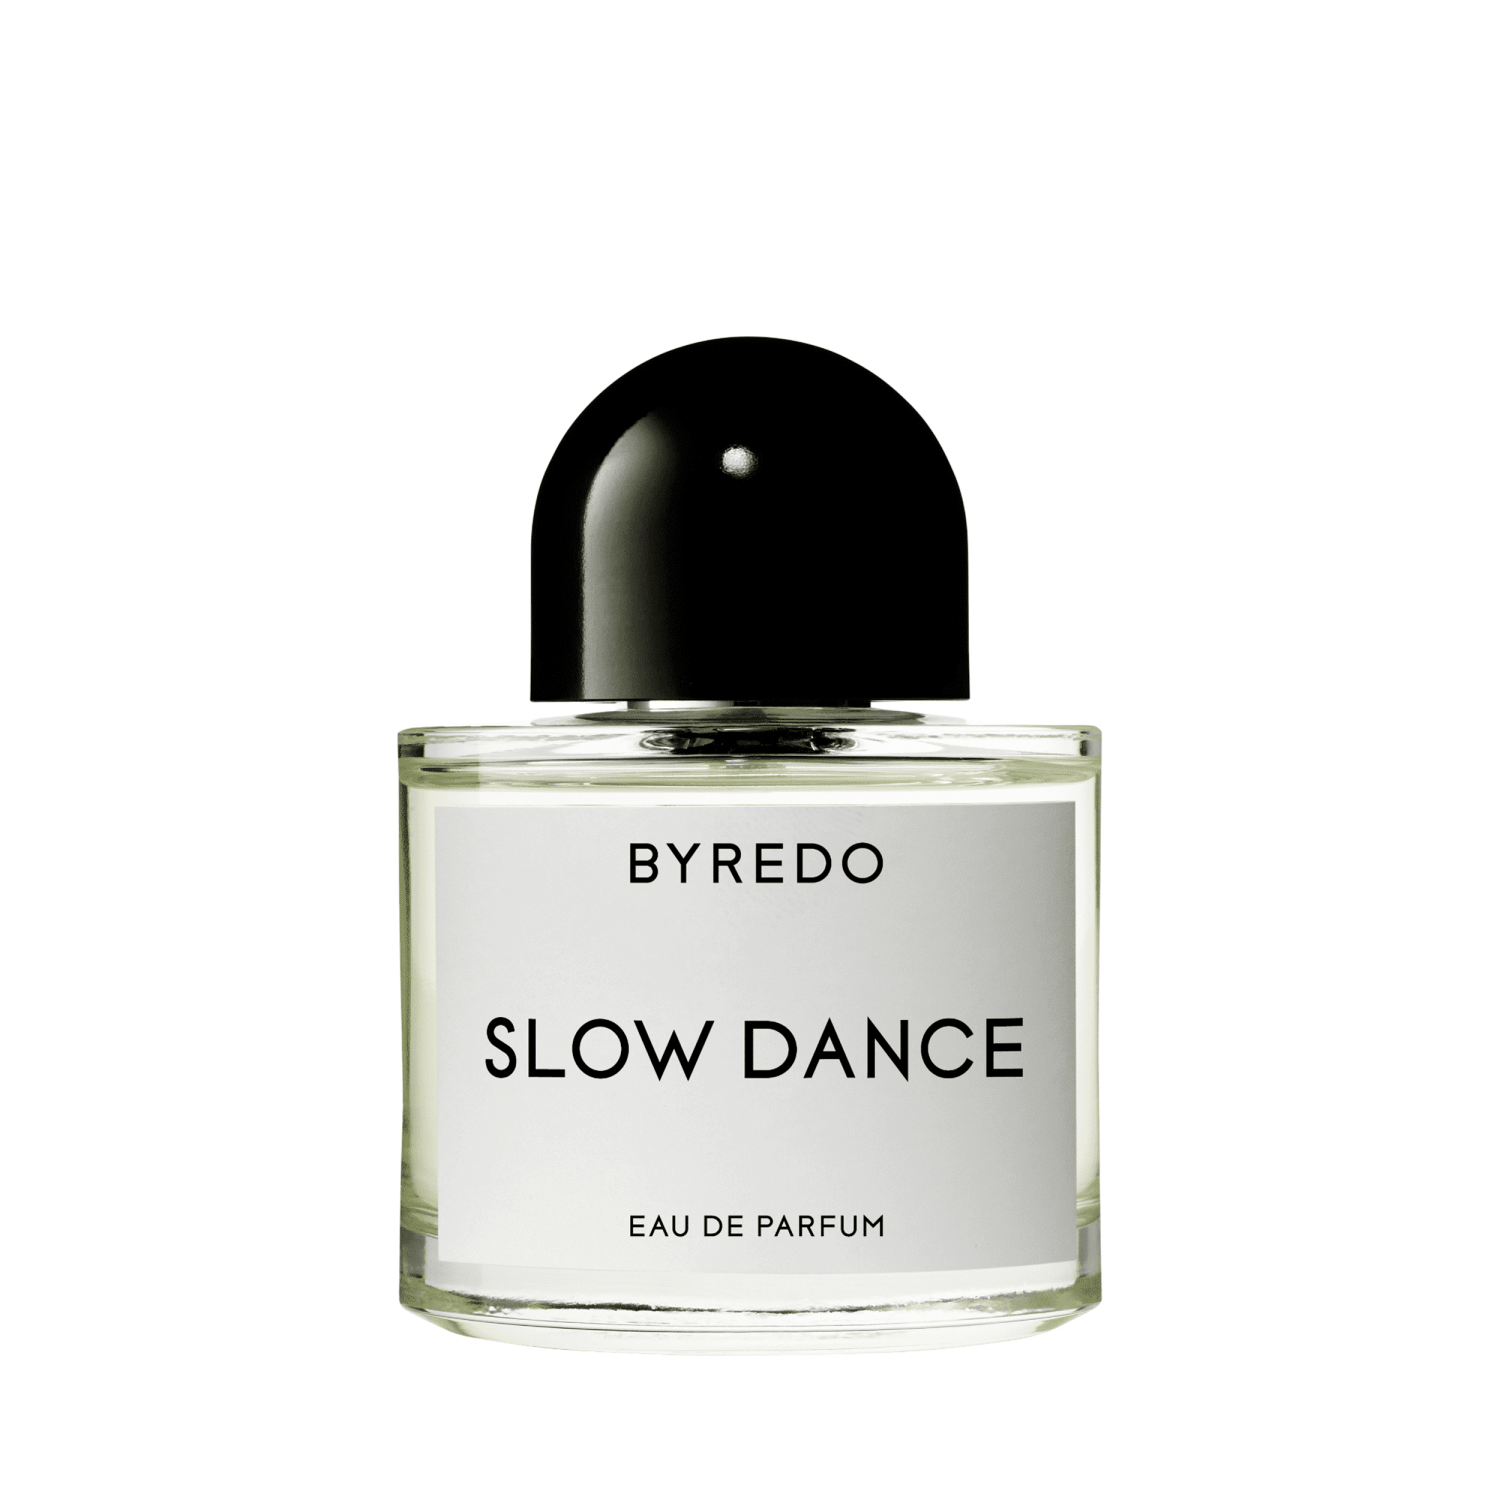 品質保証安いbyredo slow dance 50ml 香水(ユニセックス)